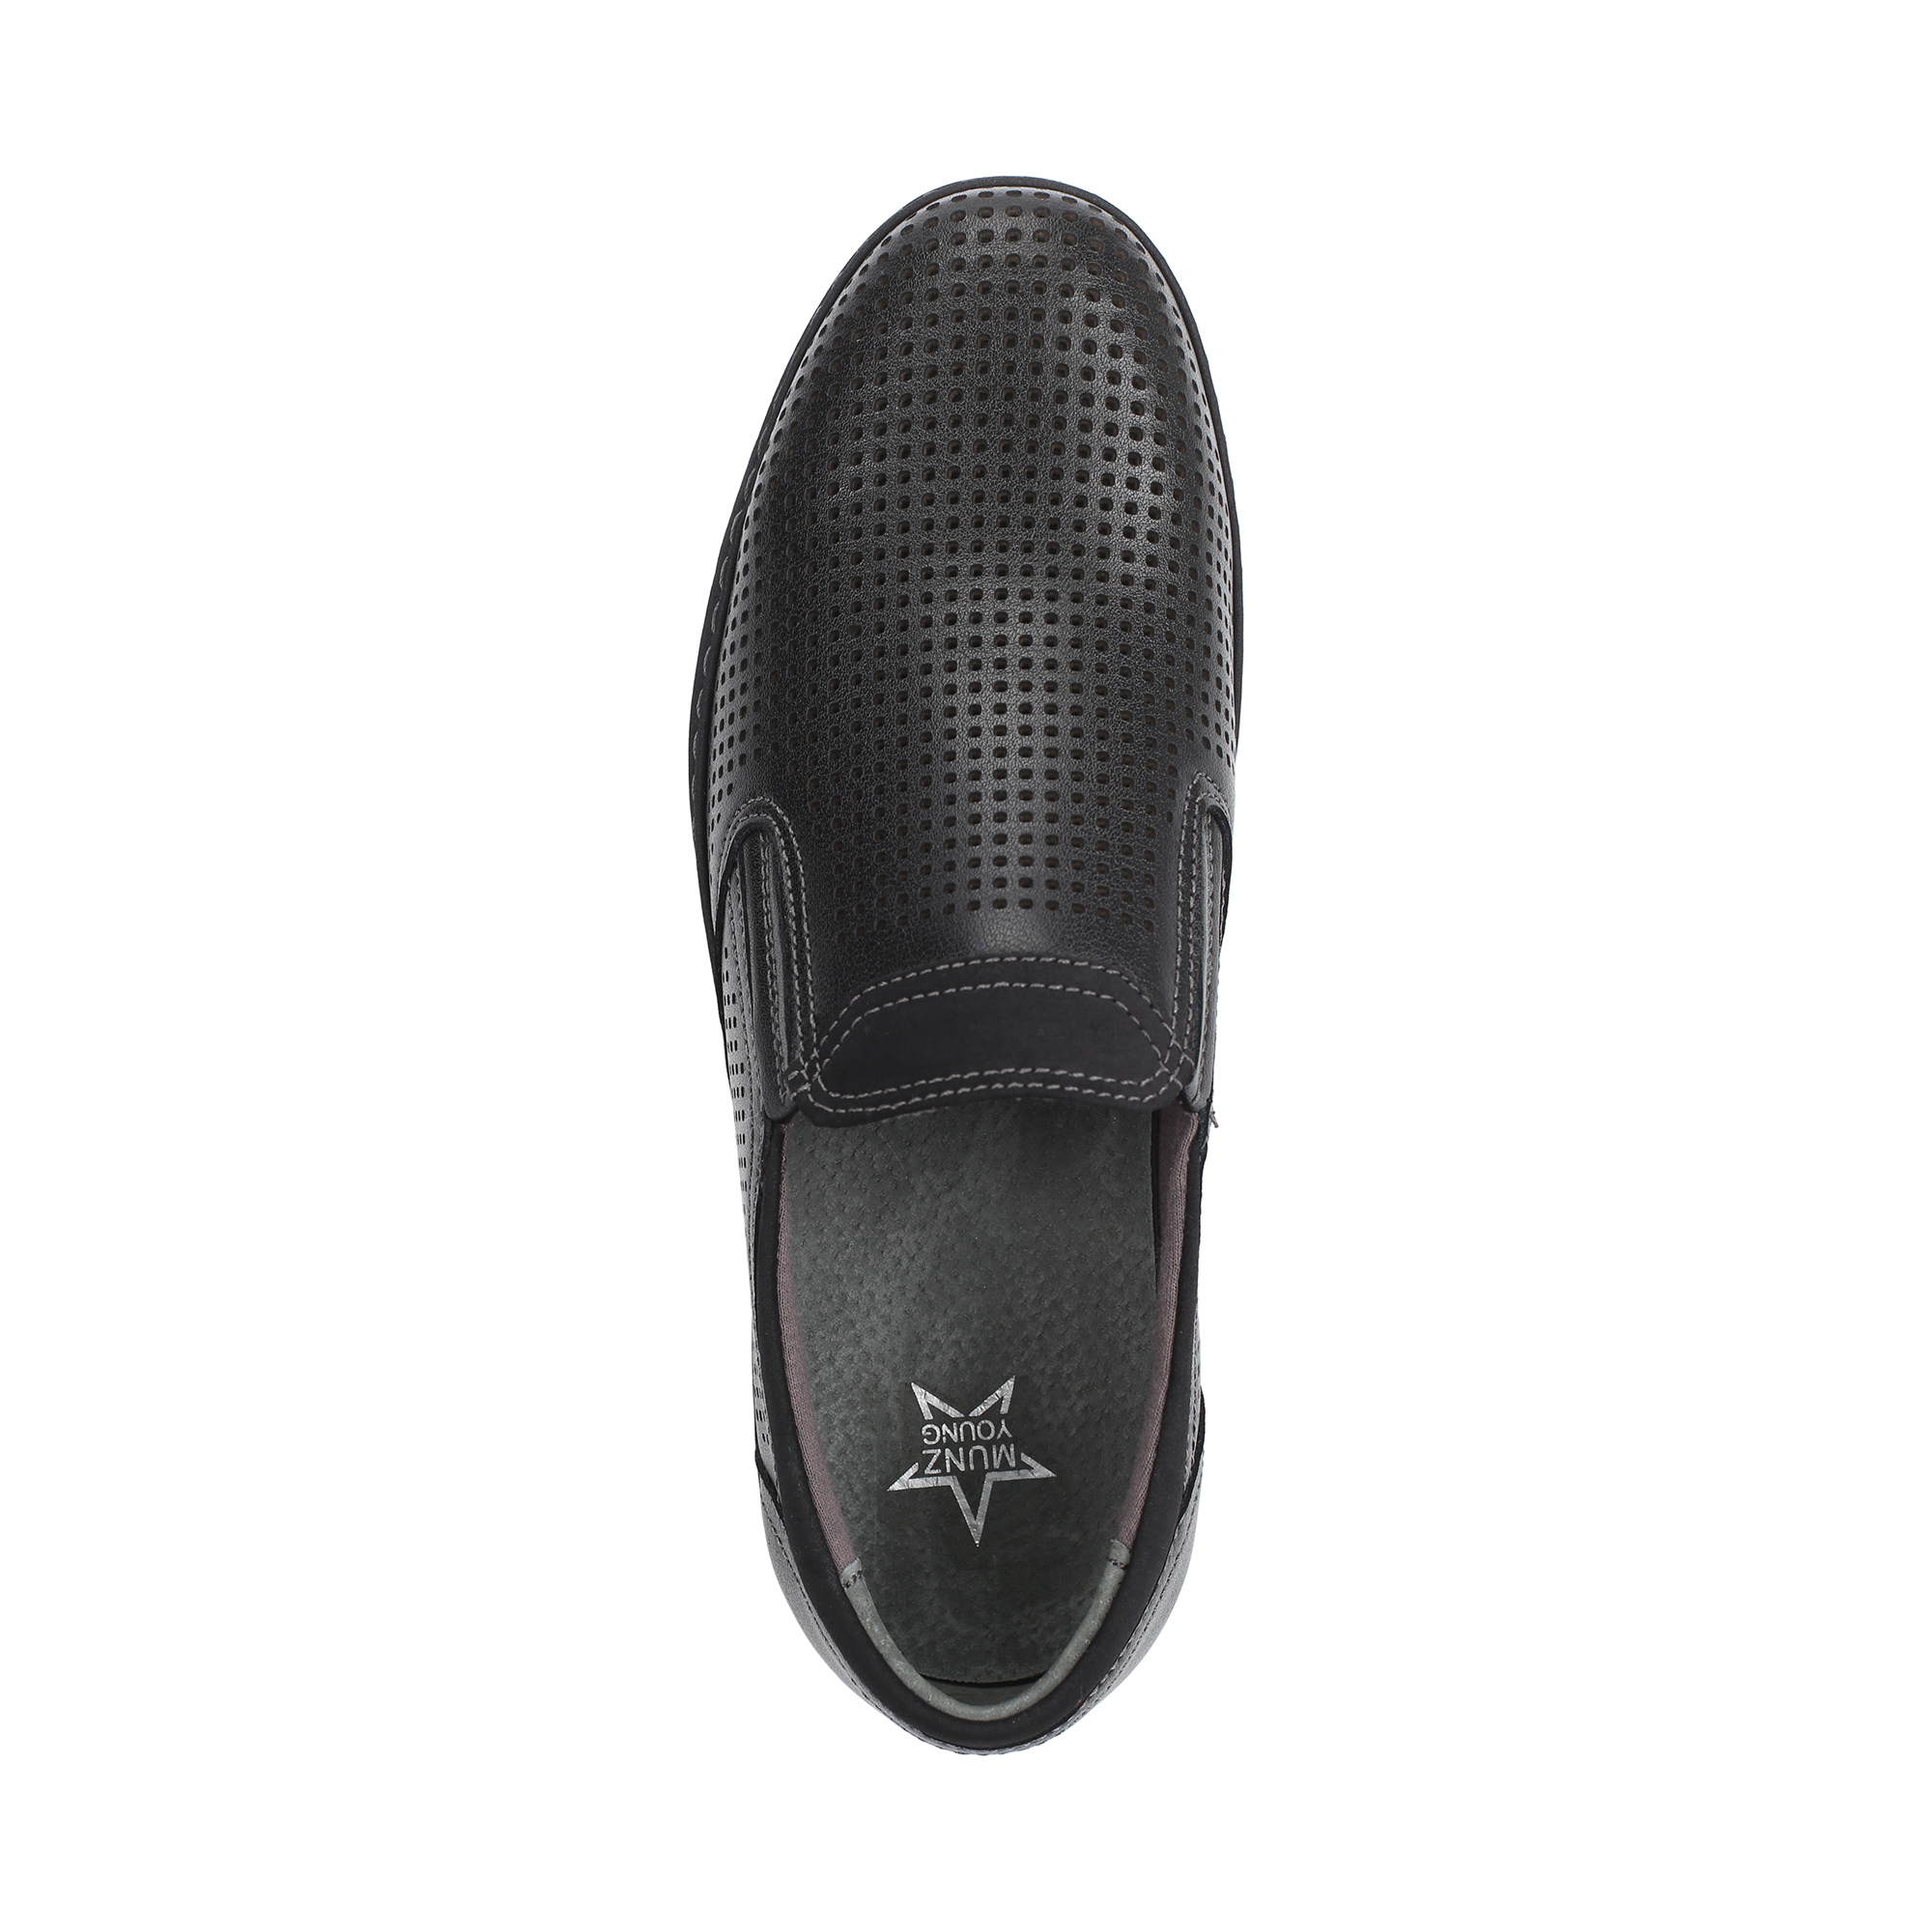 Обувь для мальчиков MUNZ YOUNG 098-283A-2602, цвет черный, размер 40 - фото 5